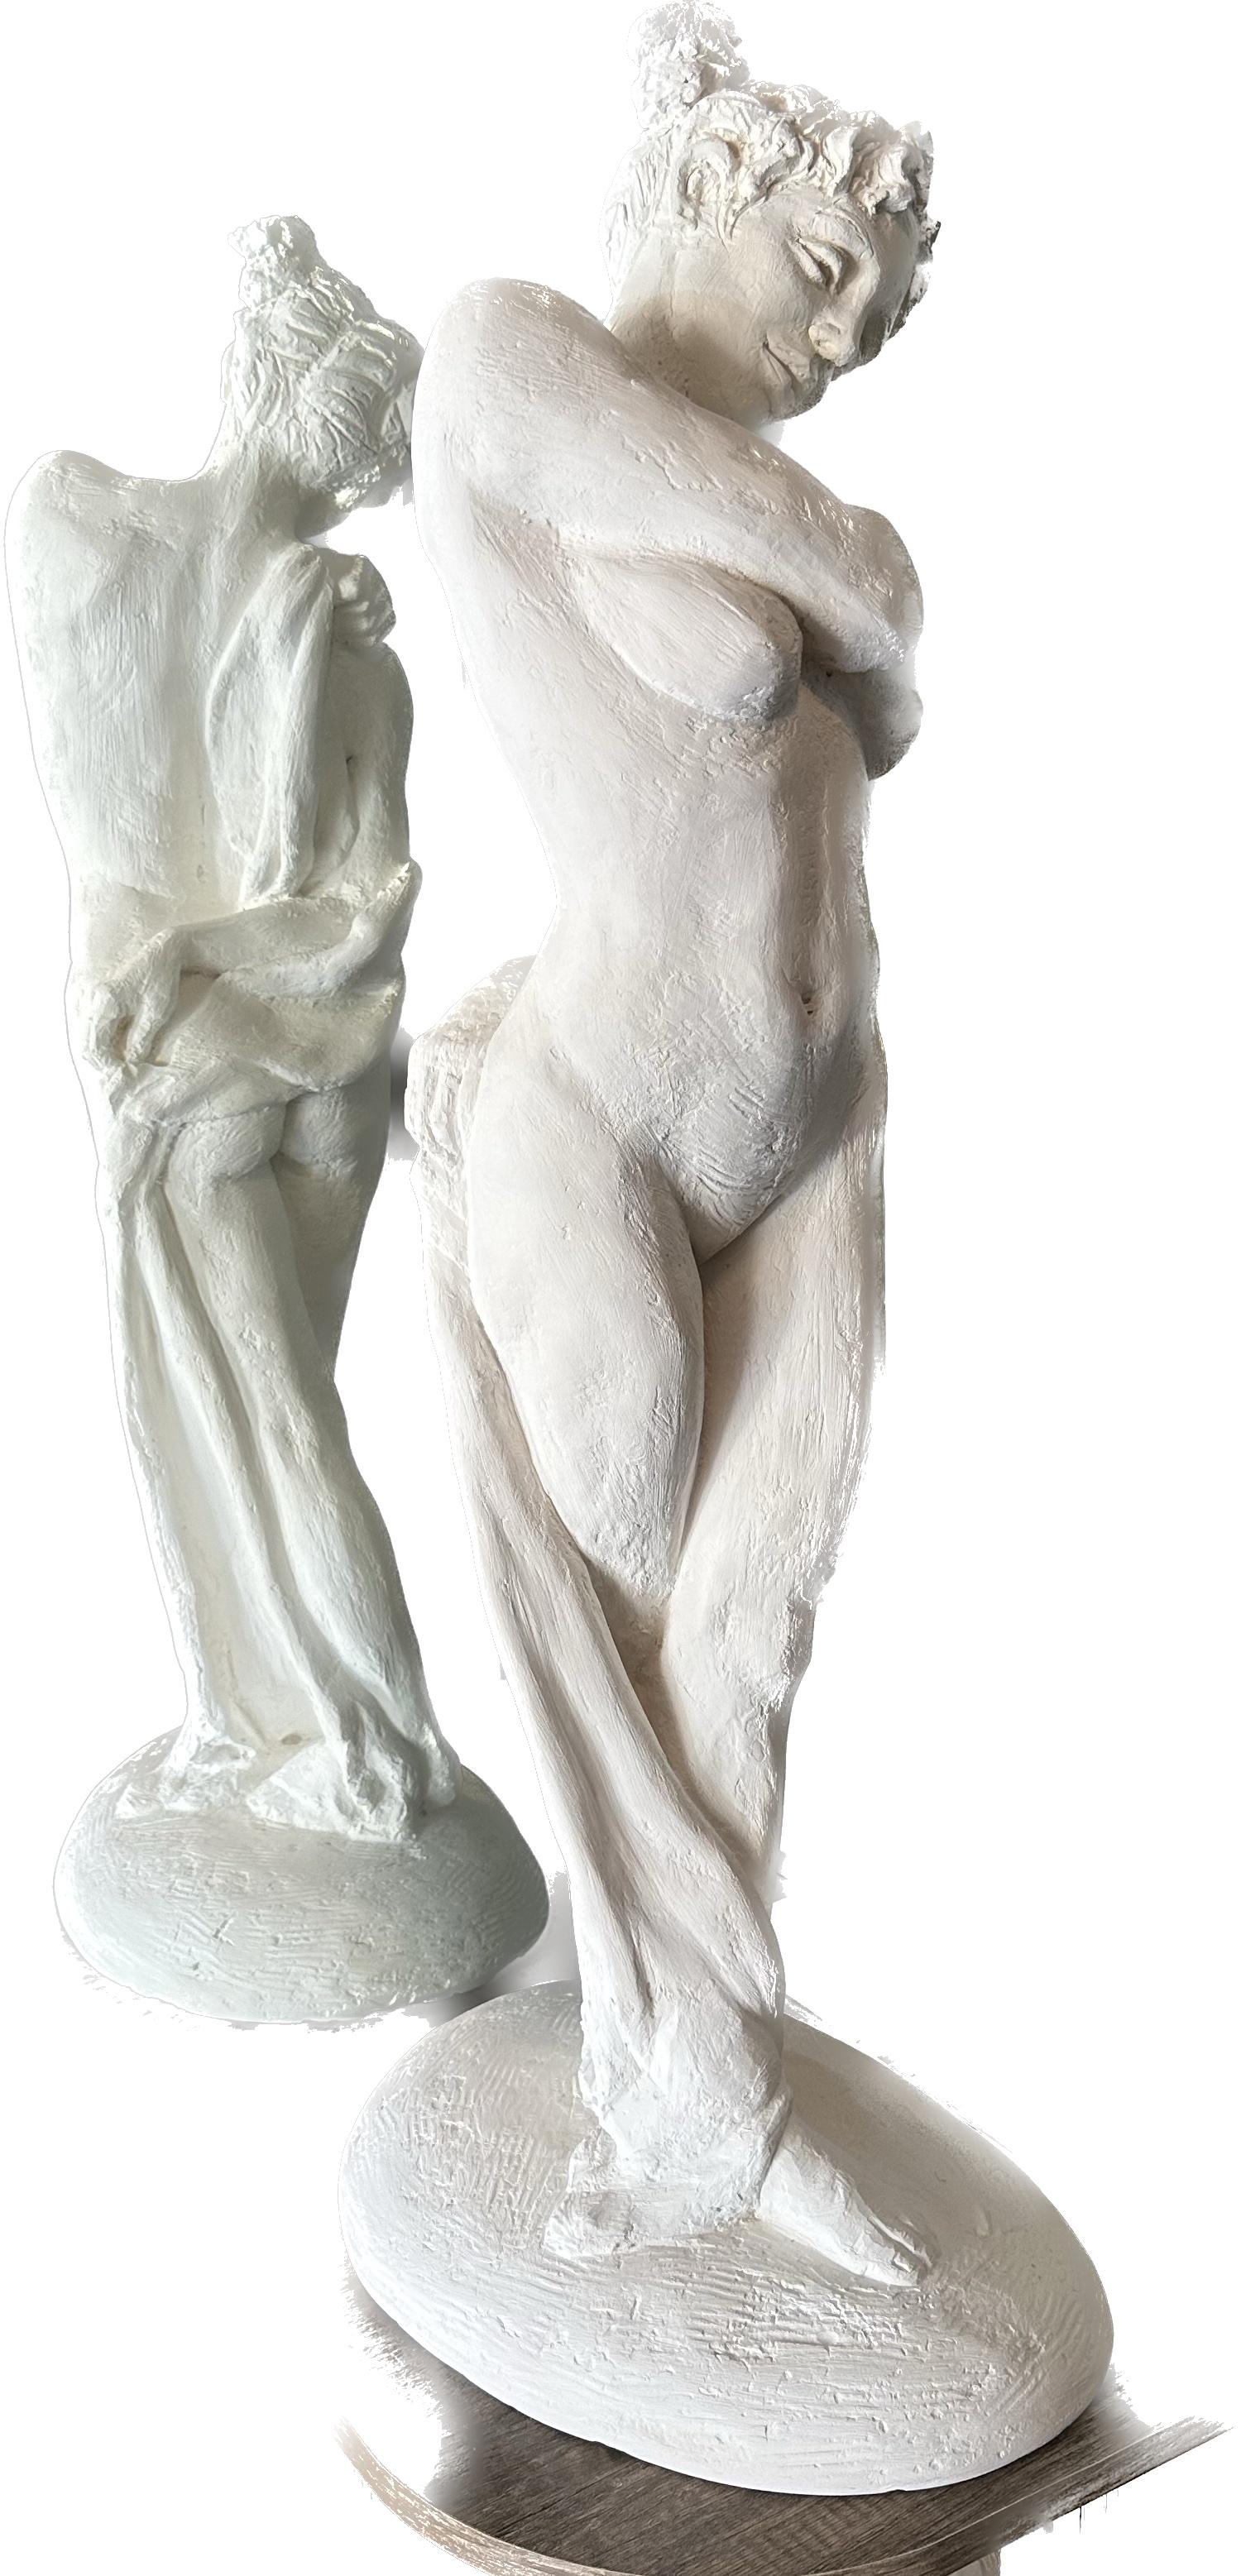 Standender Akt, Figur, Skulptur, Hydro-Stein, Staubmarmor Handgefertigt von Garo (Grau), Figurative Sculpture, von Karapet Balakeseryan  (Garo)